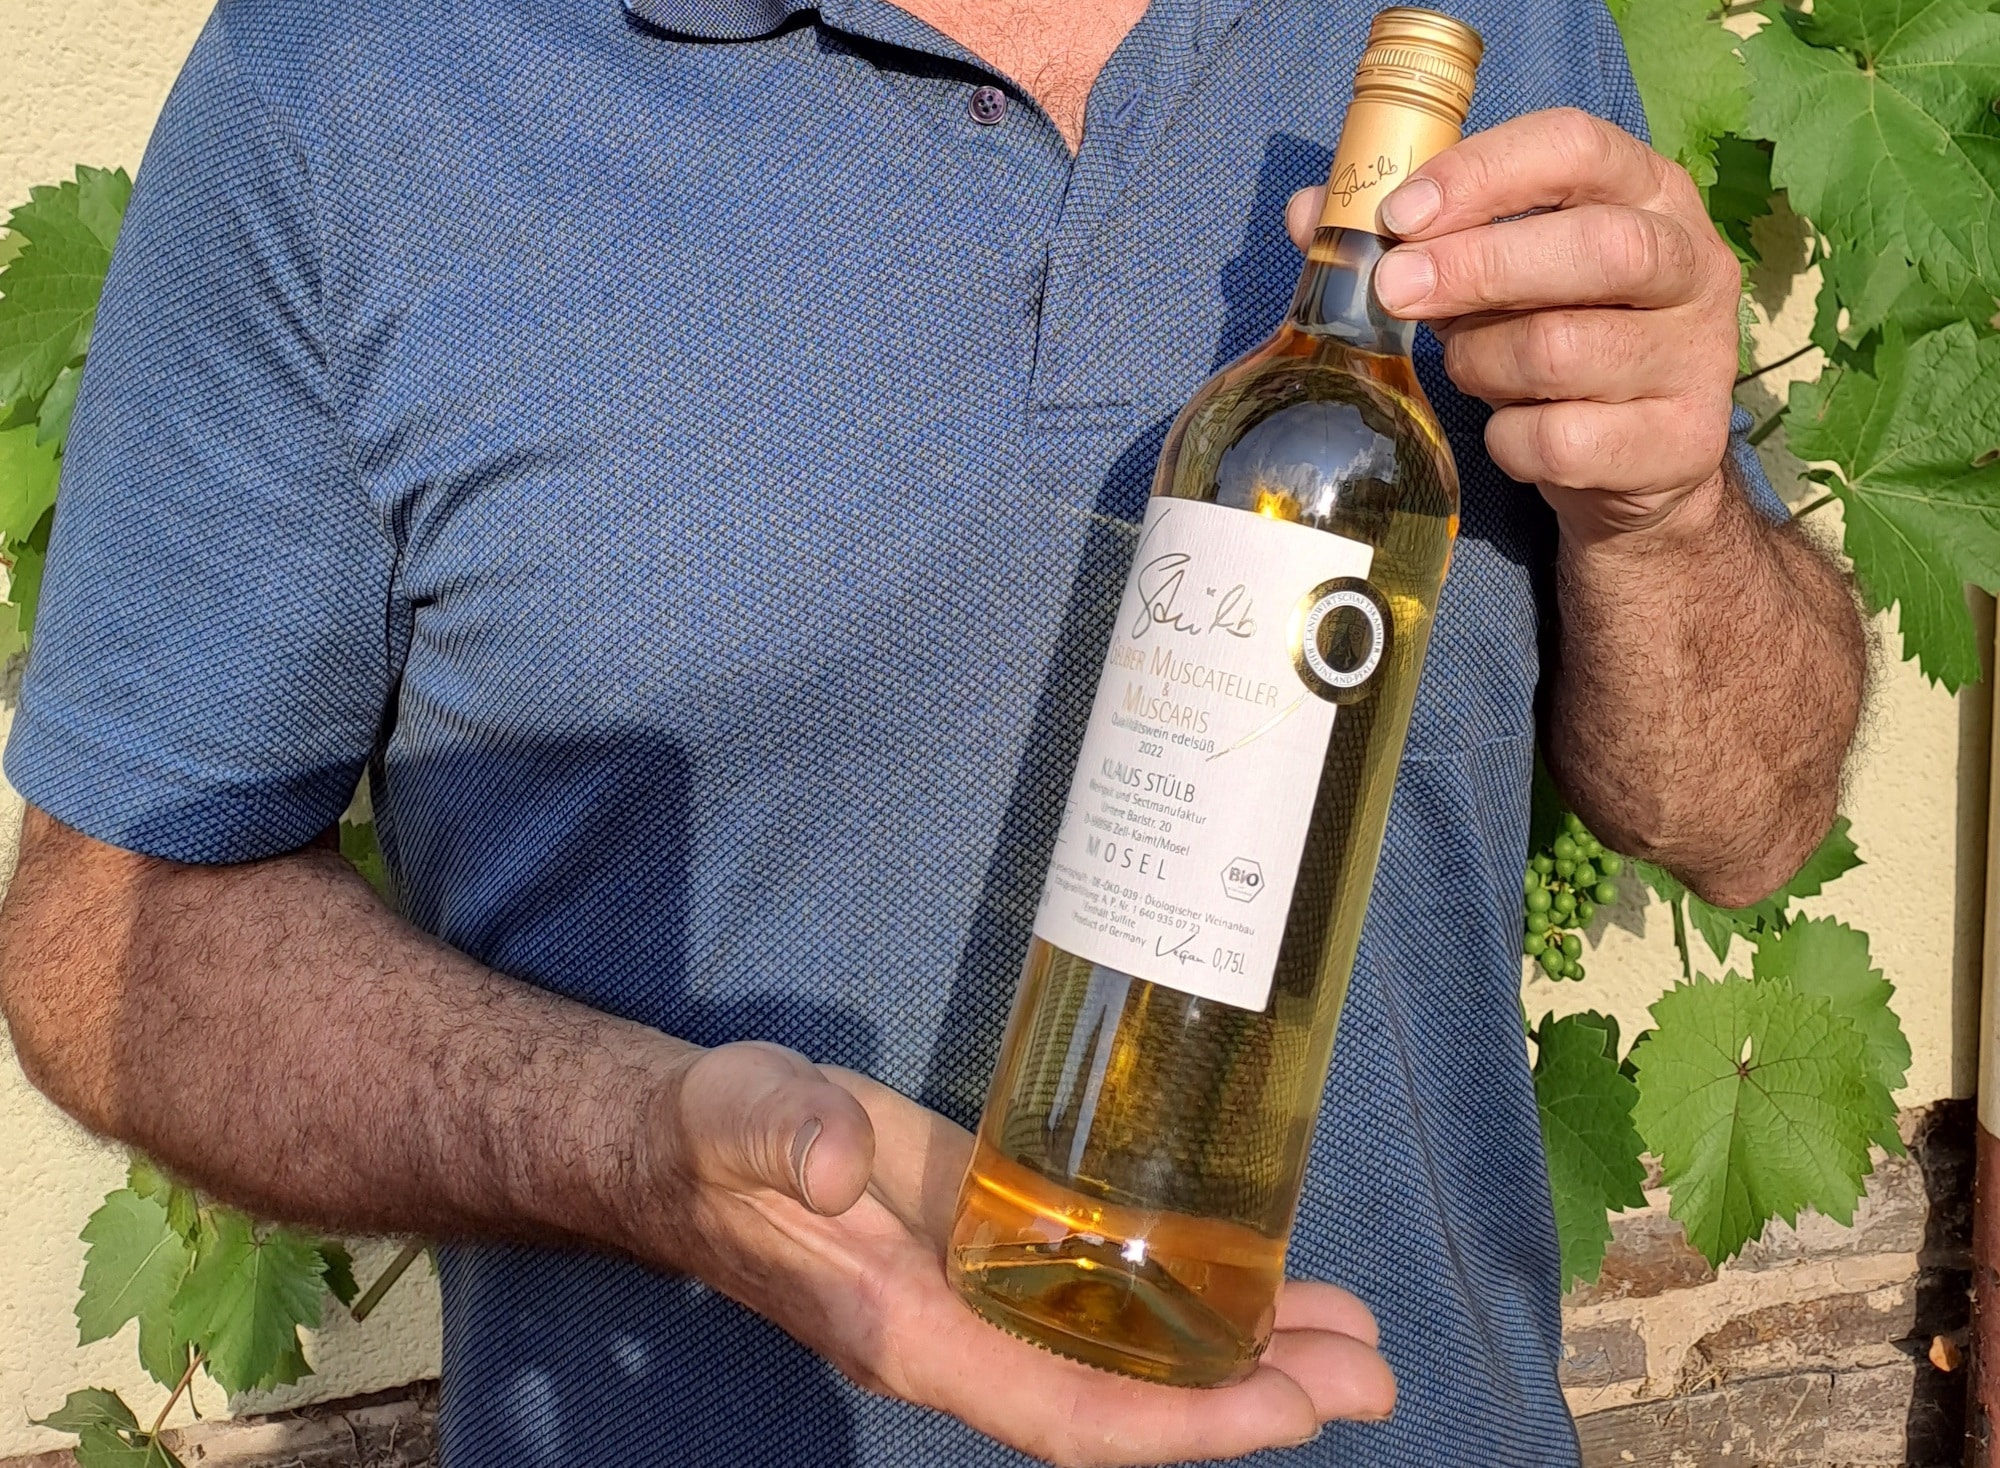 Winzer Klaus Stülb mit einer Flasche seines Gelben Muscateller & Muscaris